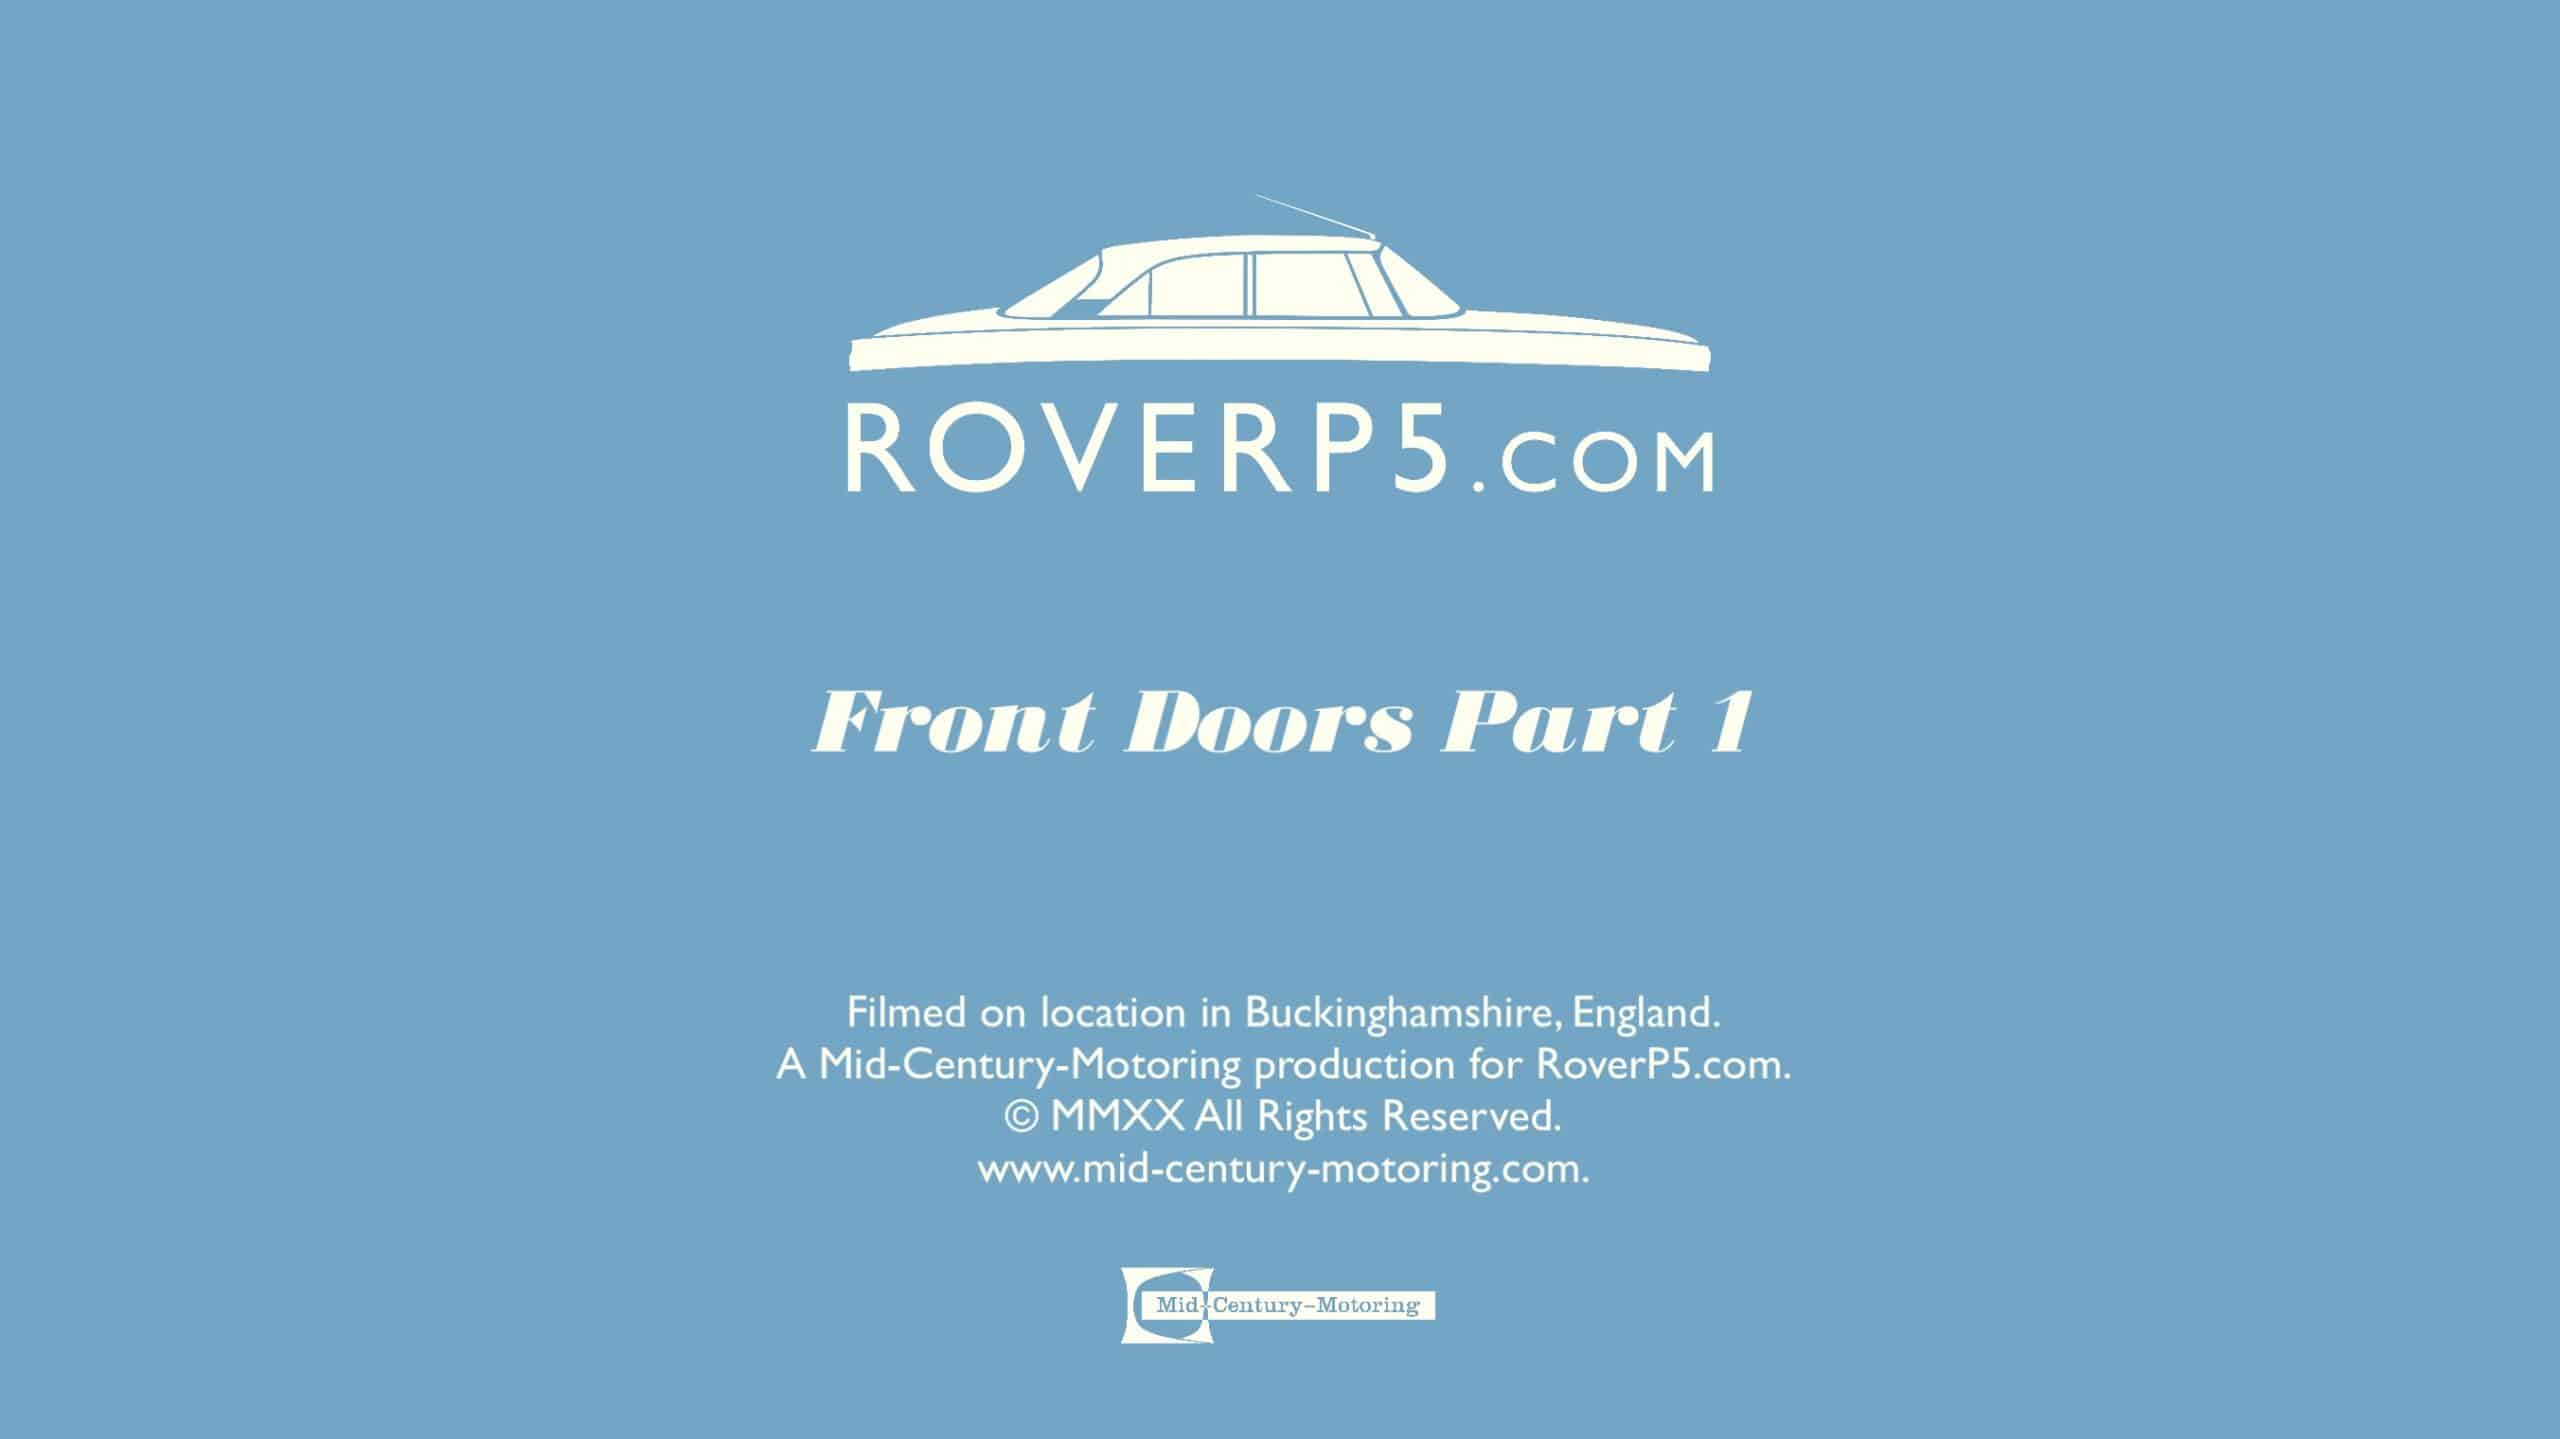 RoverP5.com Video: Front Doors Part 1